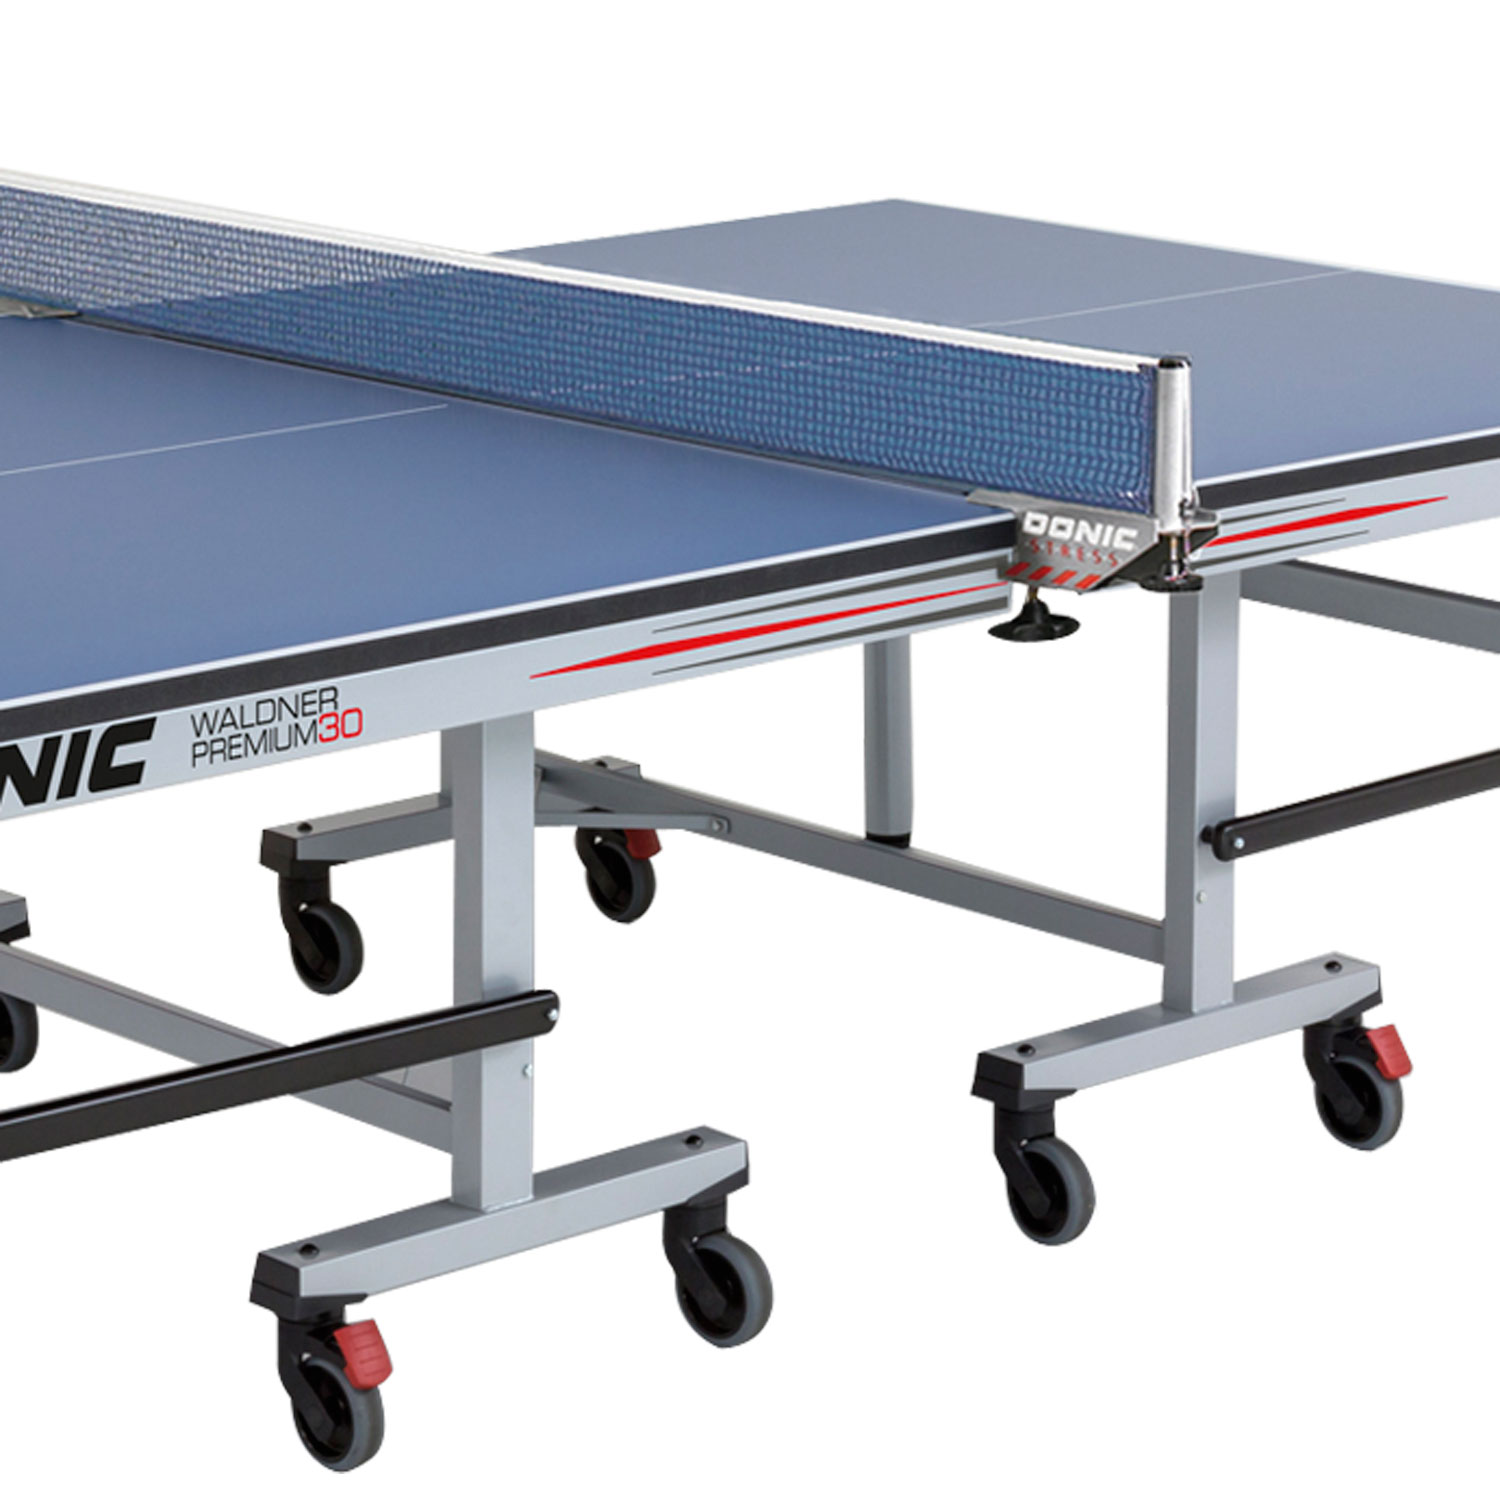 Профессиональный теннисный стол Donic Waldner Premium 30 синий DR-16